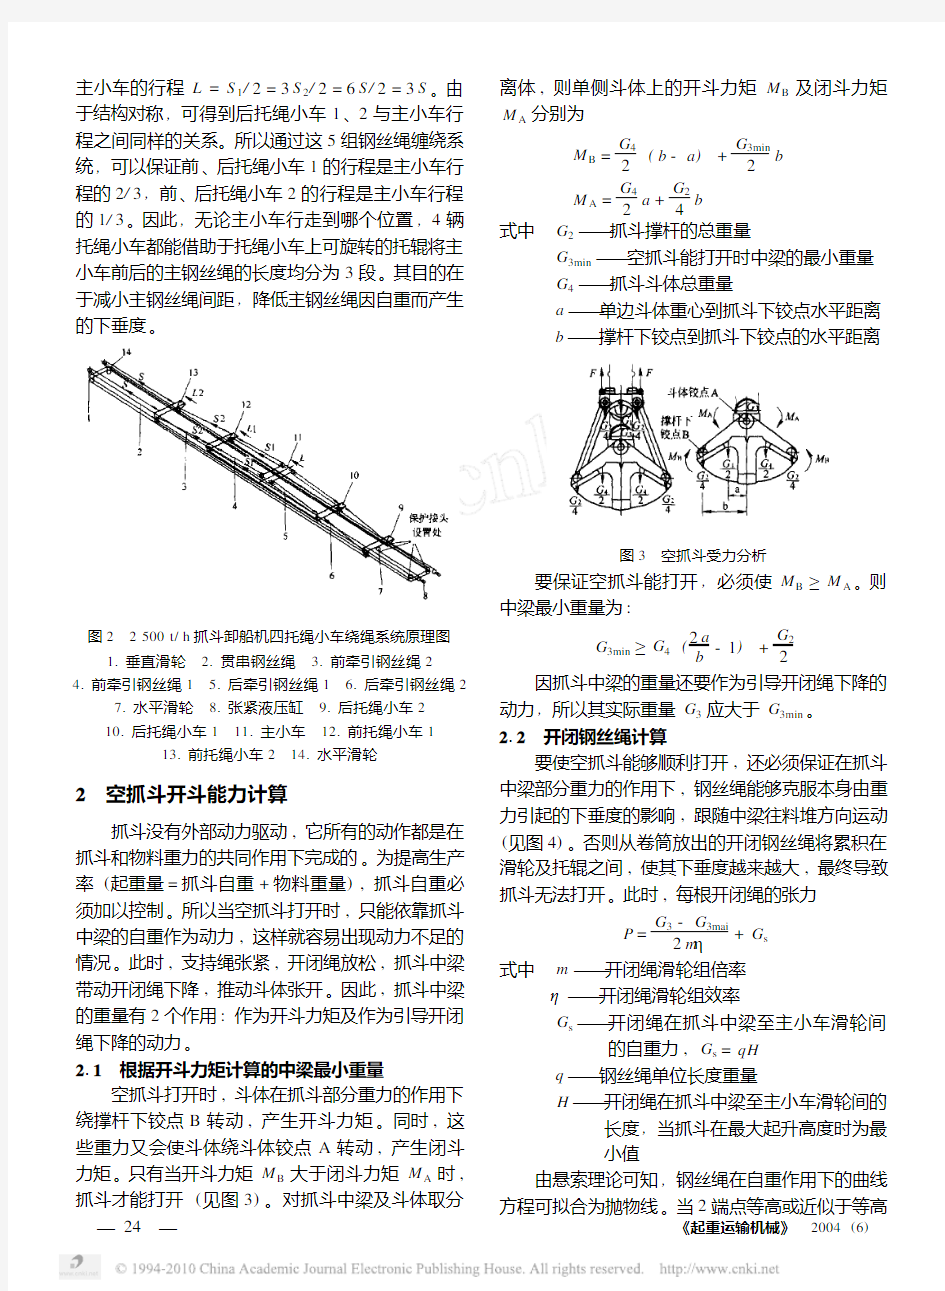 大型桥式抓斗卸船机托绳小车系统(1)